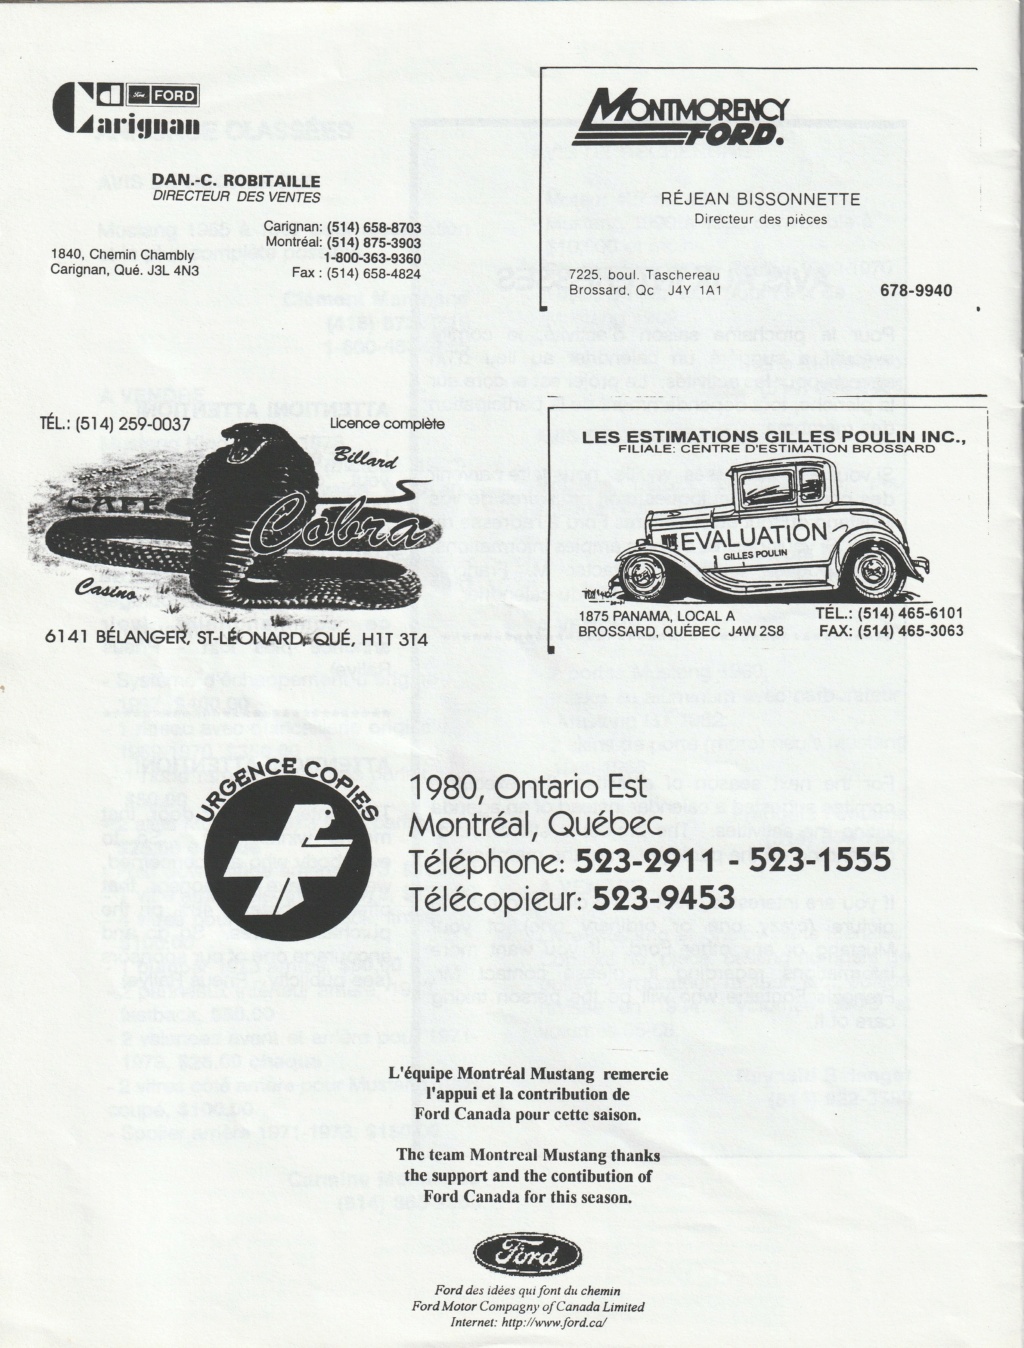 Montréal Mustang dans le temps! 1981 à aujourd'hui (Histoire en photos) - Page 8 Img_2475